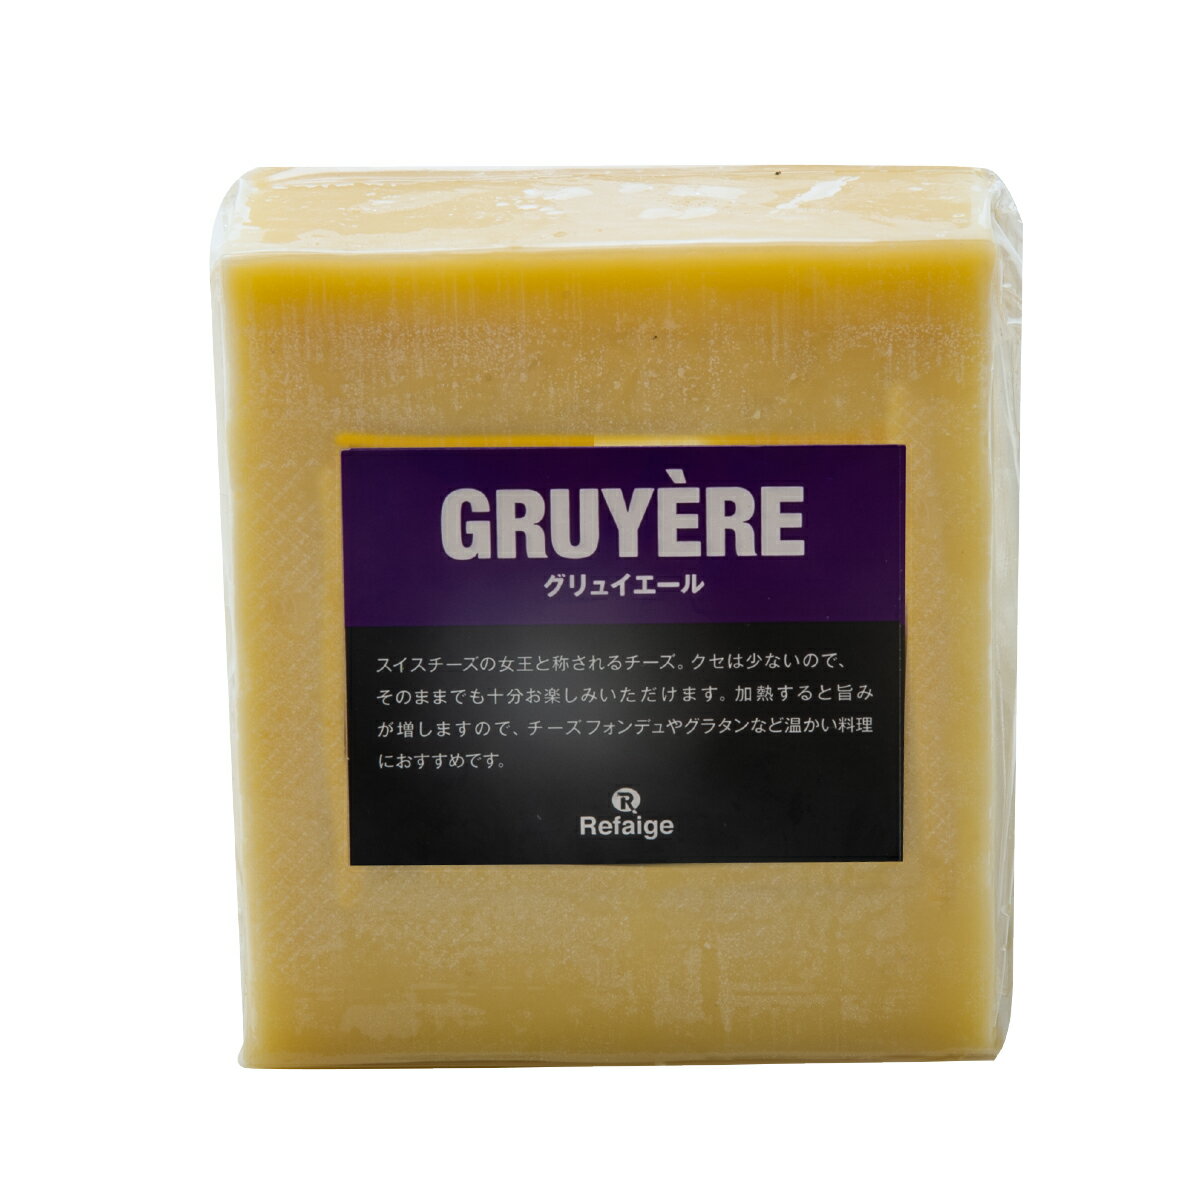 送料無料 グリエール(グリュイエール) チーズ 約1kgカット スイス産 ハードチーズ チーズ専門店 業務用